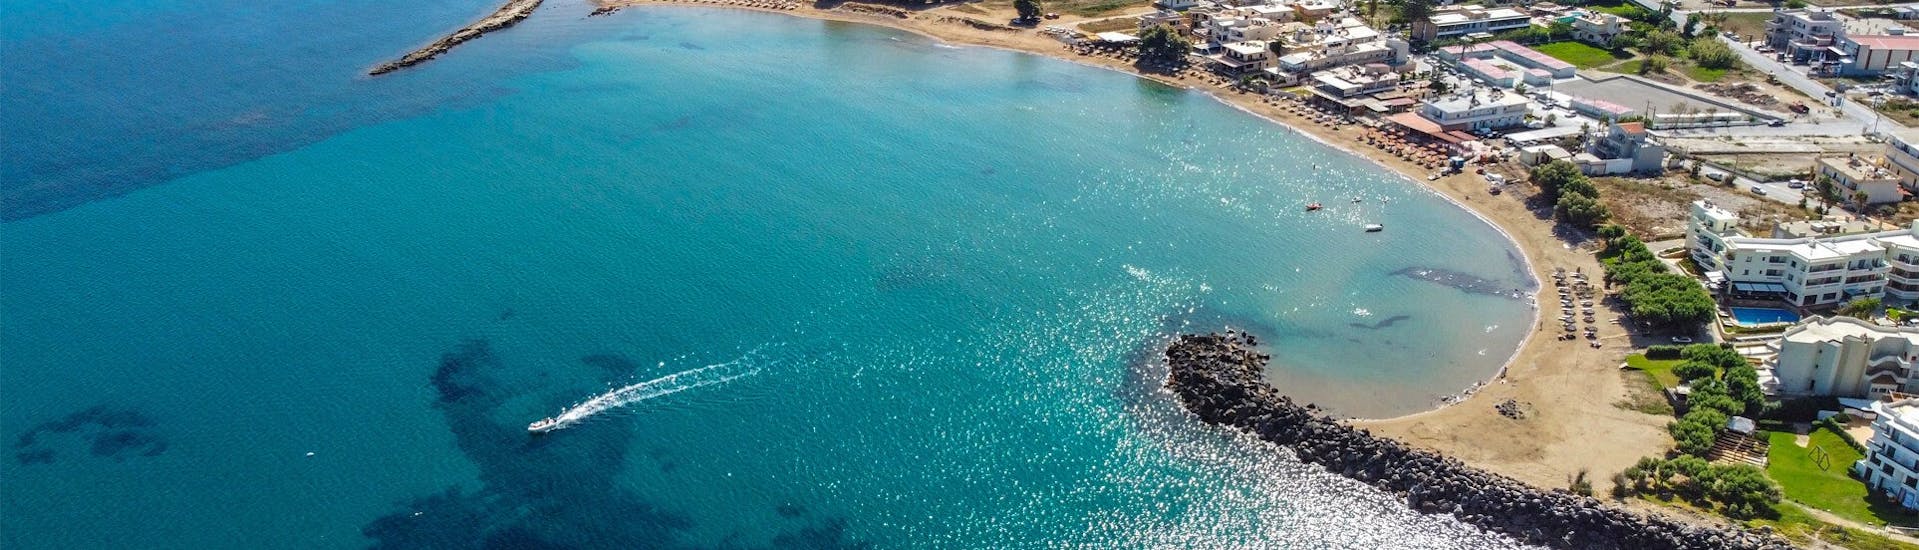 De kust van Kissamos en het prachtige blauwe Kretan water tijdens Kayak Verhuur in Kissamos door Kissamos Sea Sports.